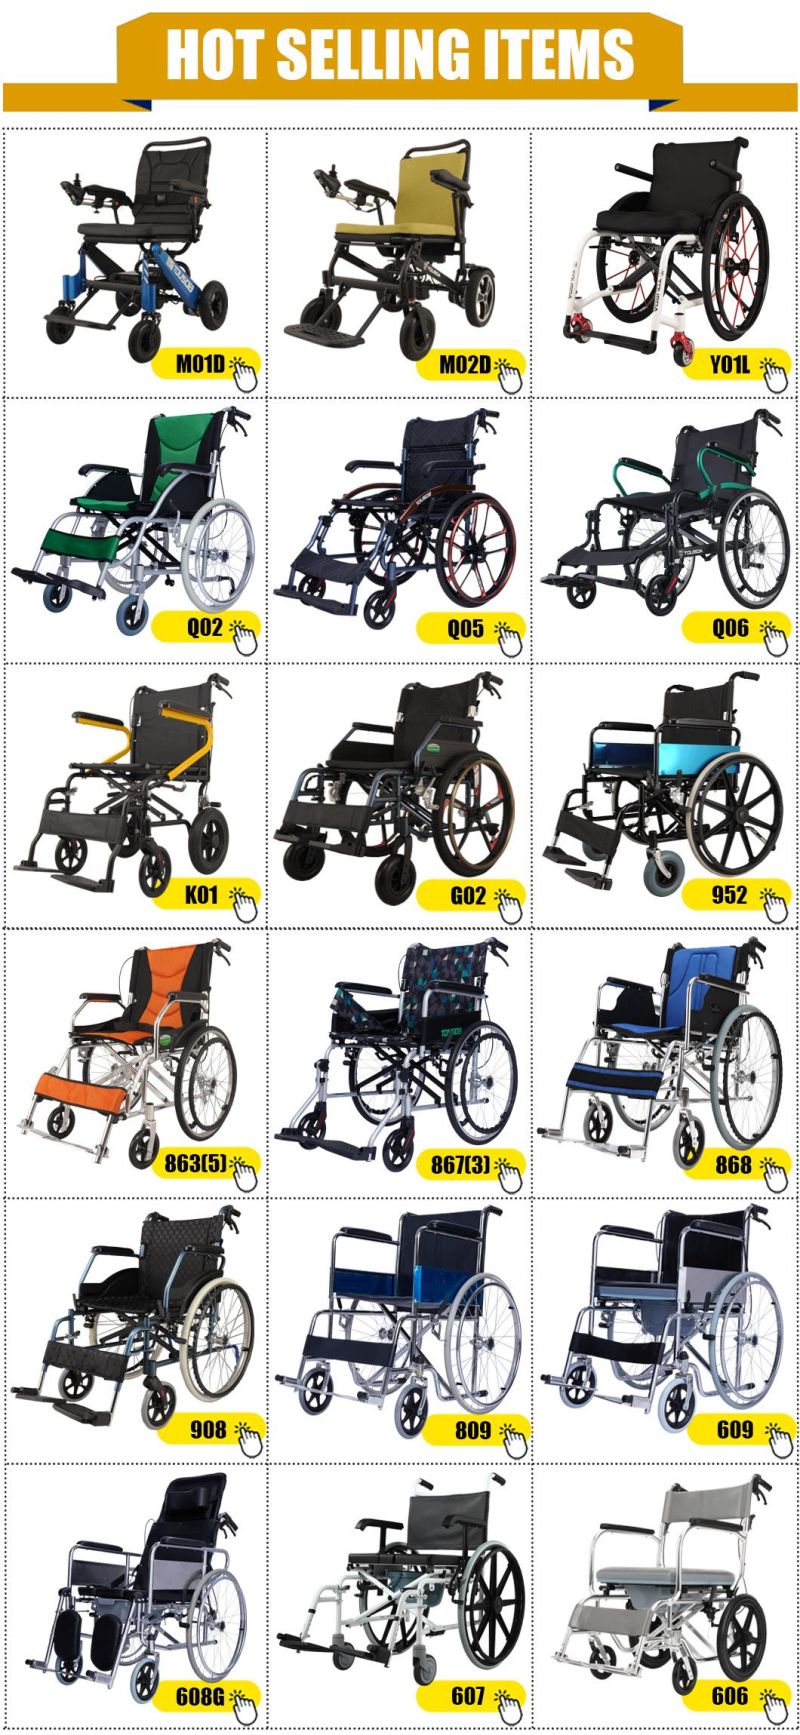 High Quality Aluminum Lightweight Wheelchair